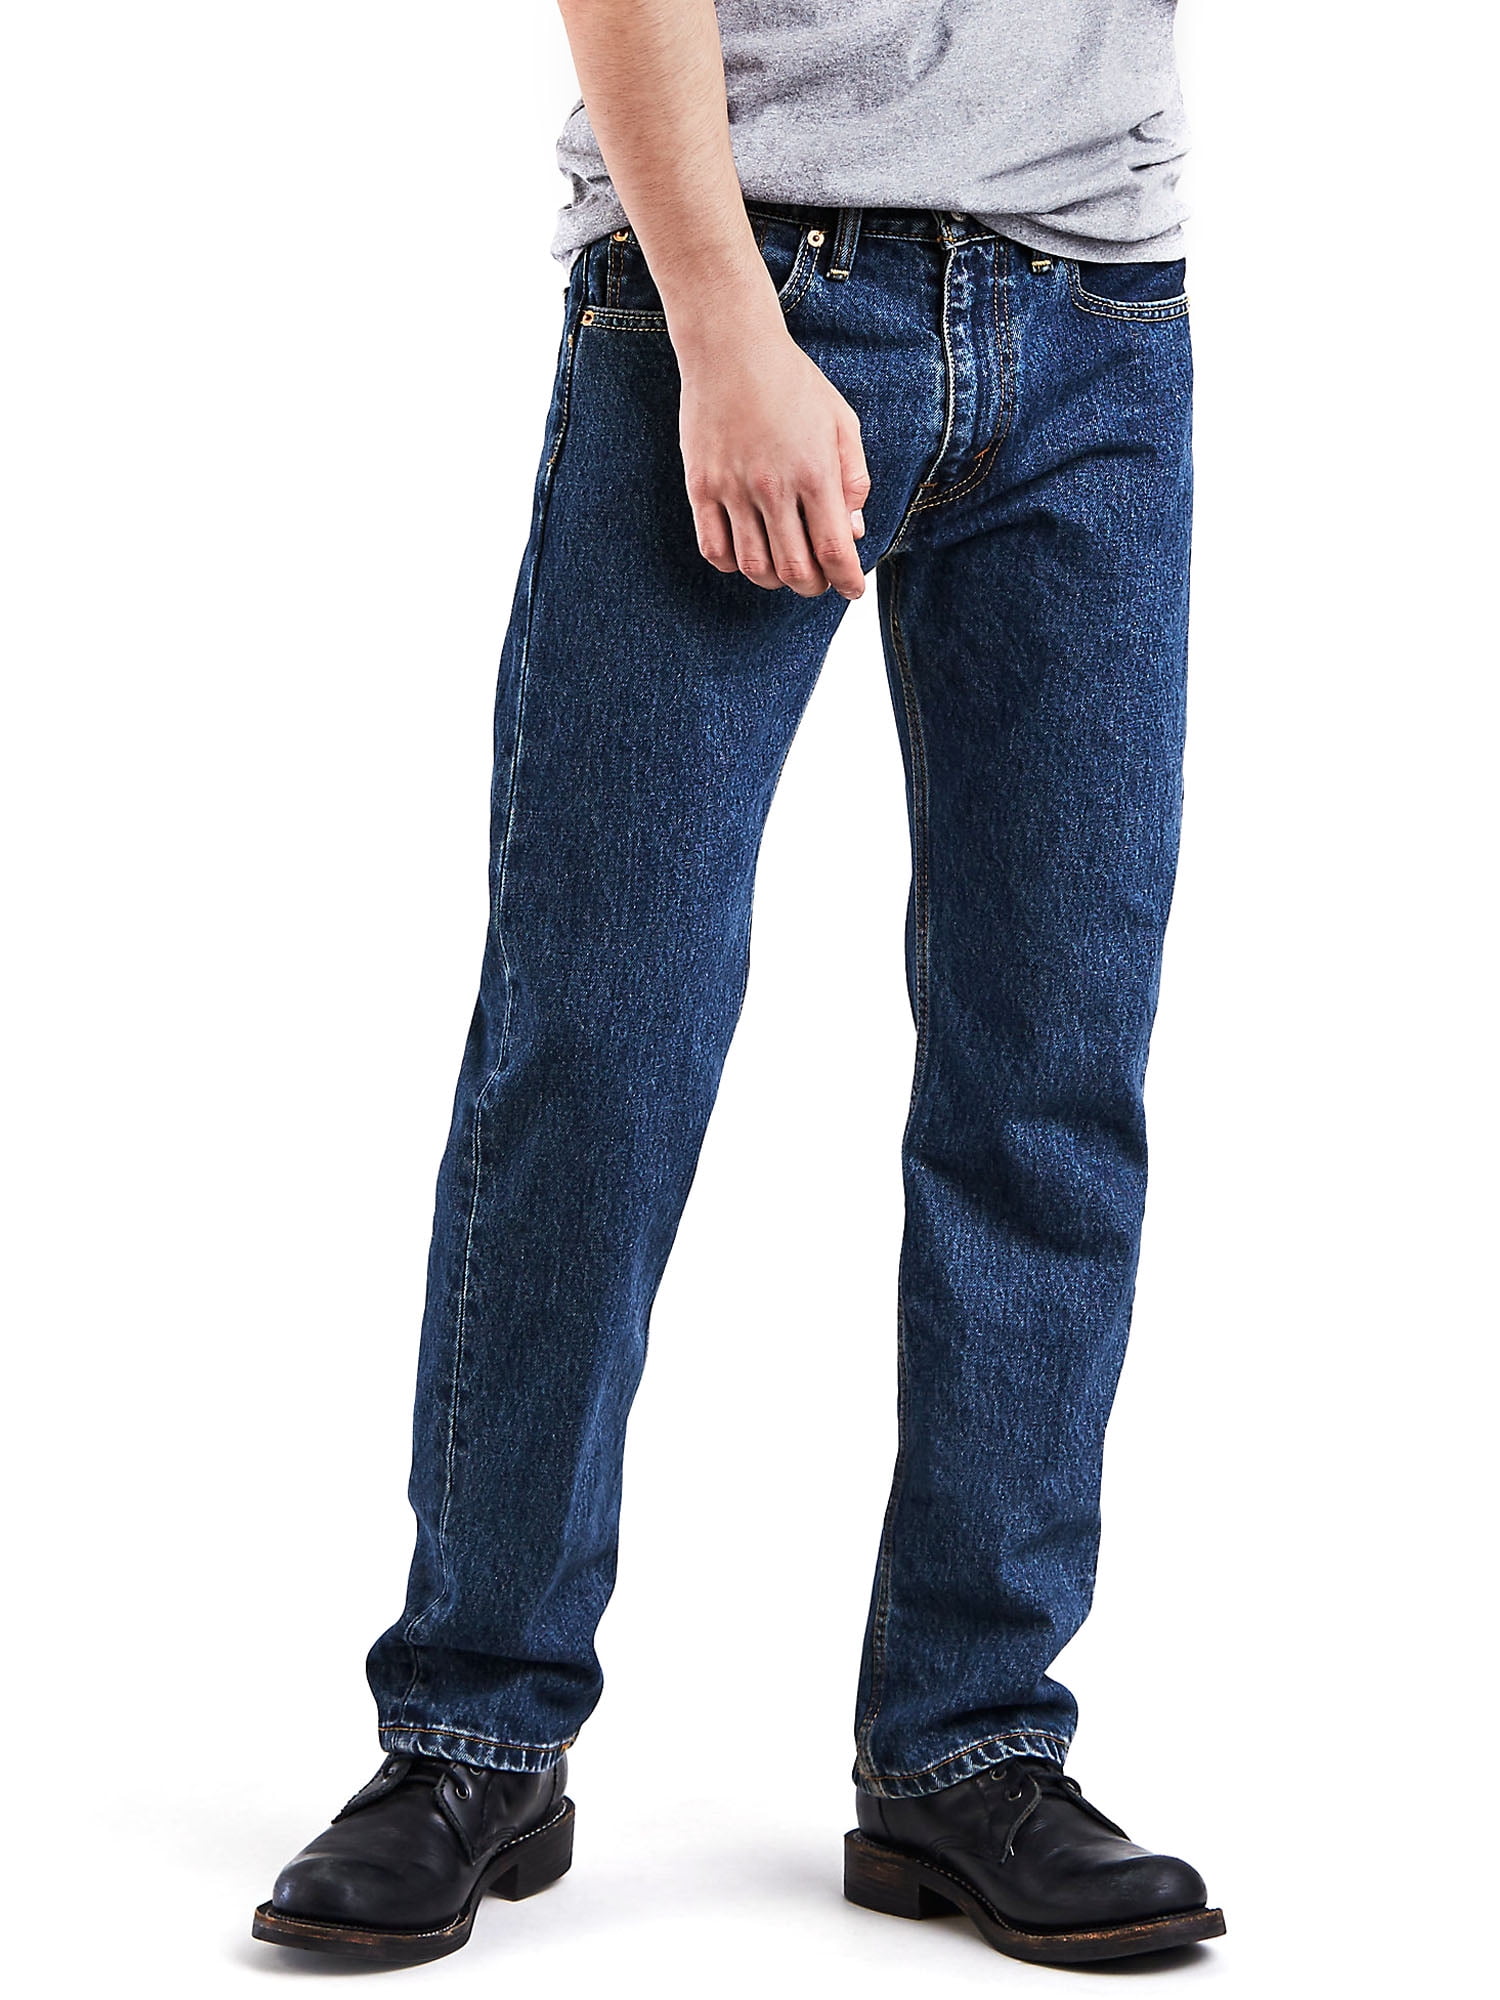 Levis Men's 505 Fit Jeans - Walmart.com